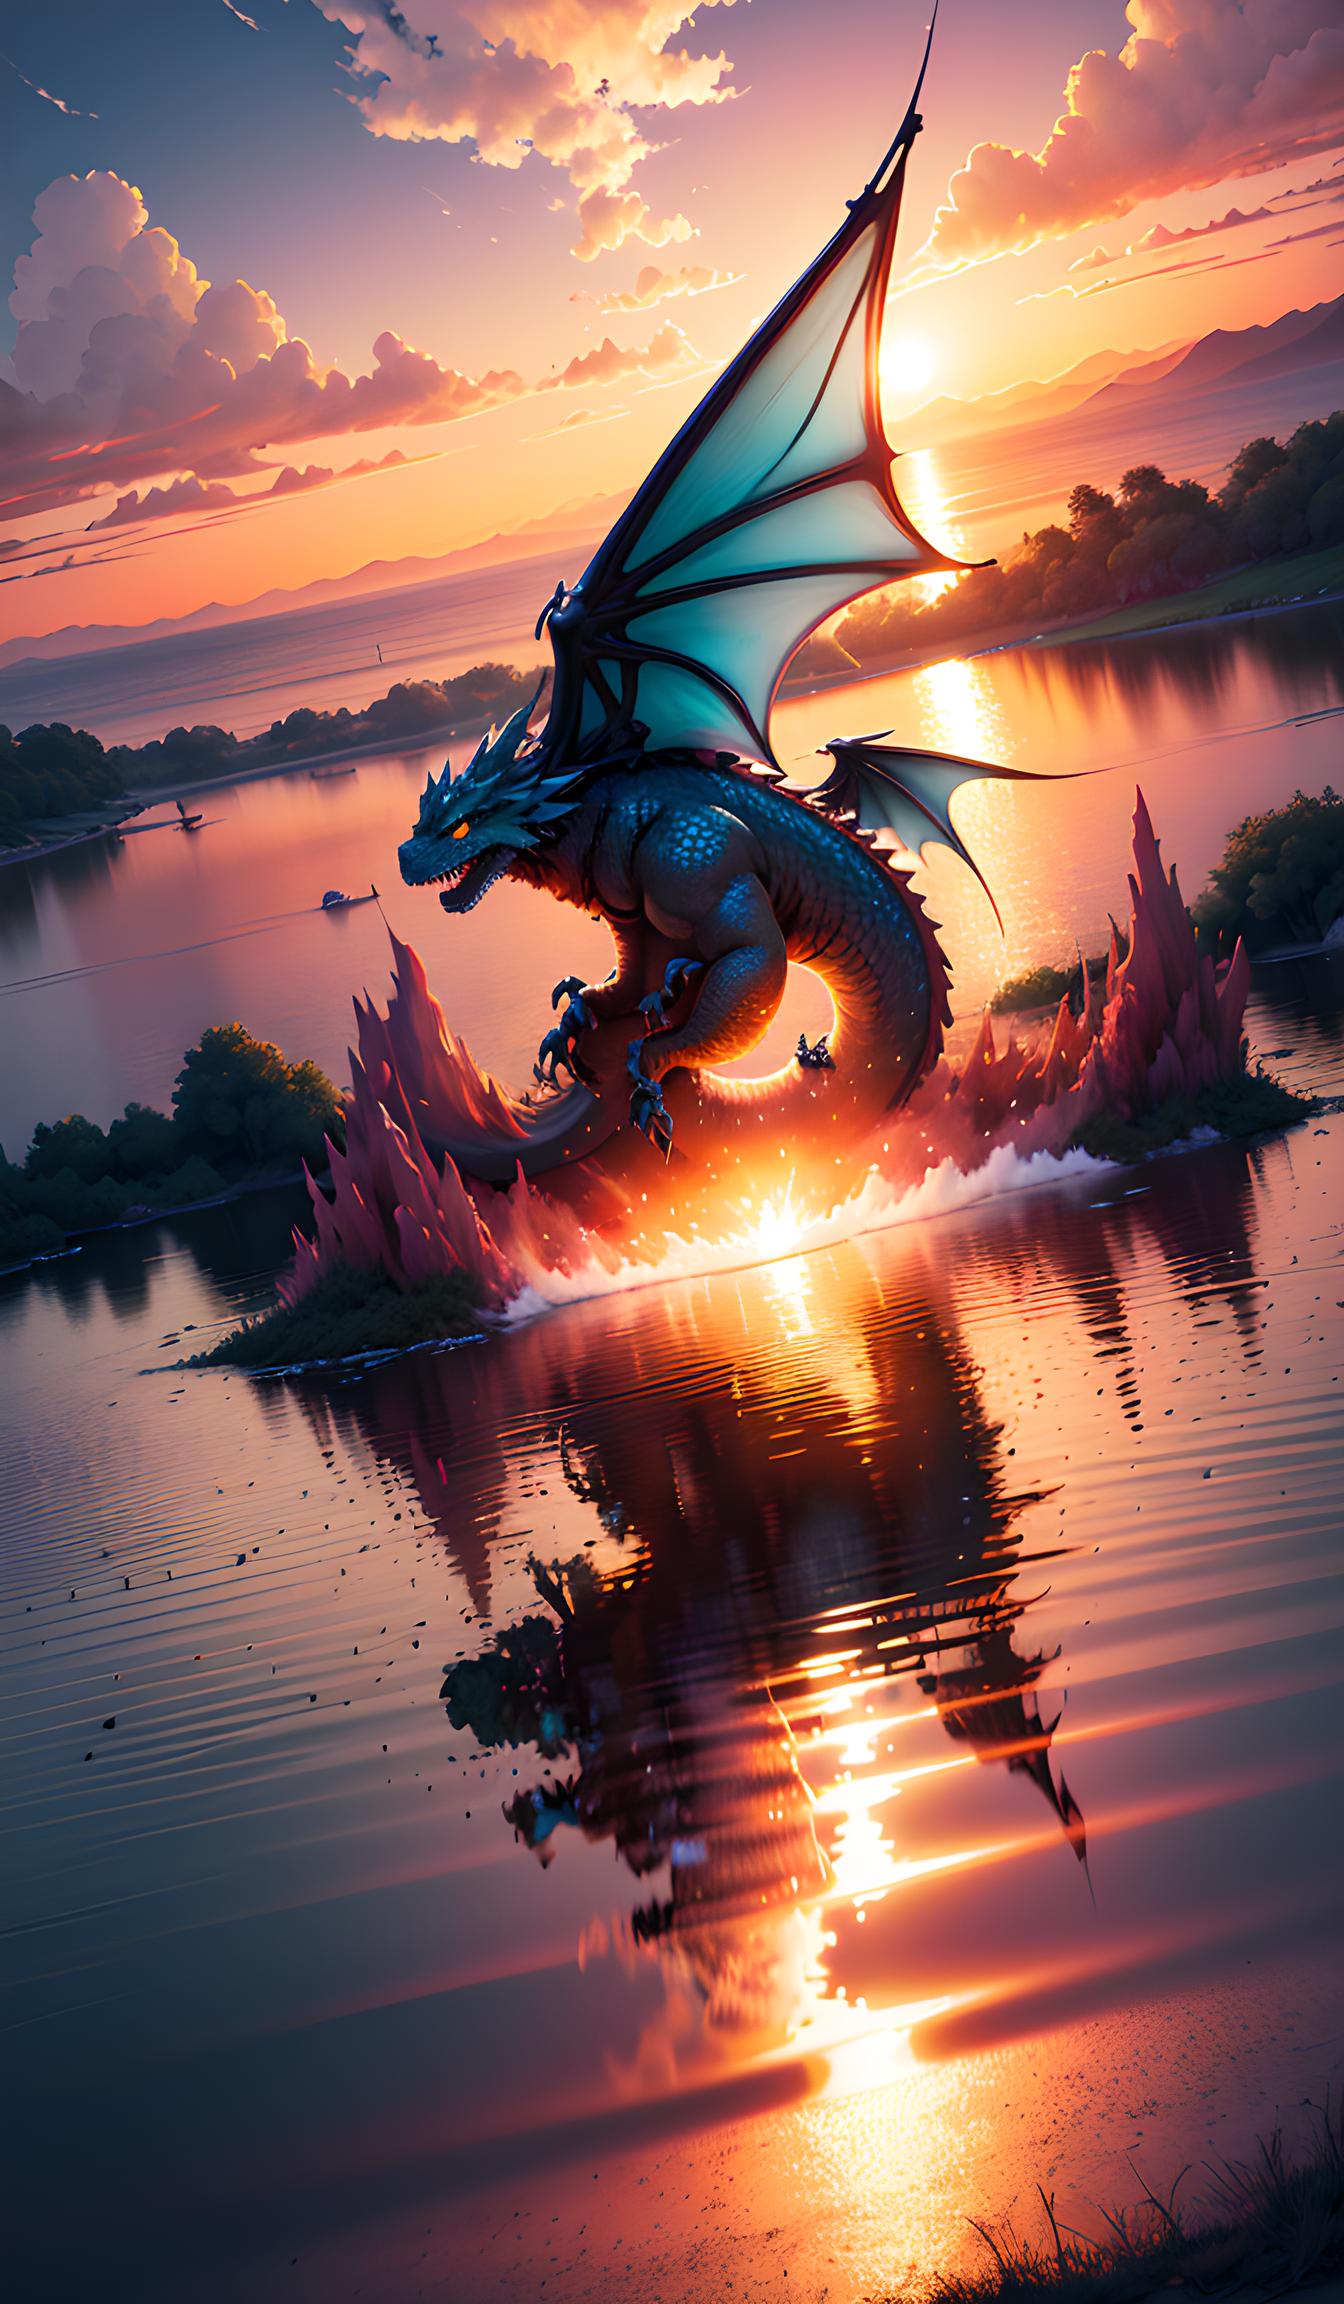 Dragon lake